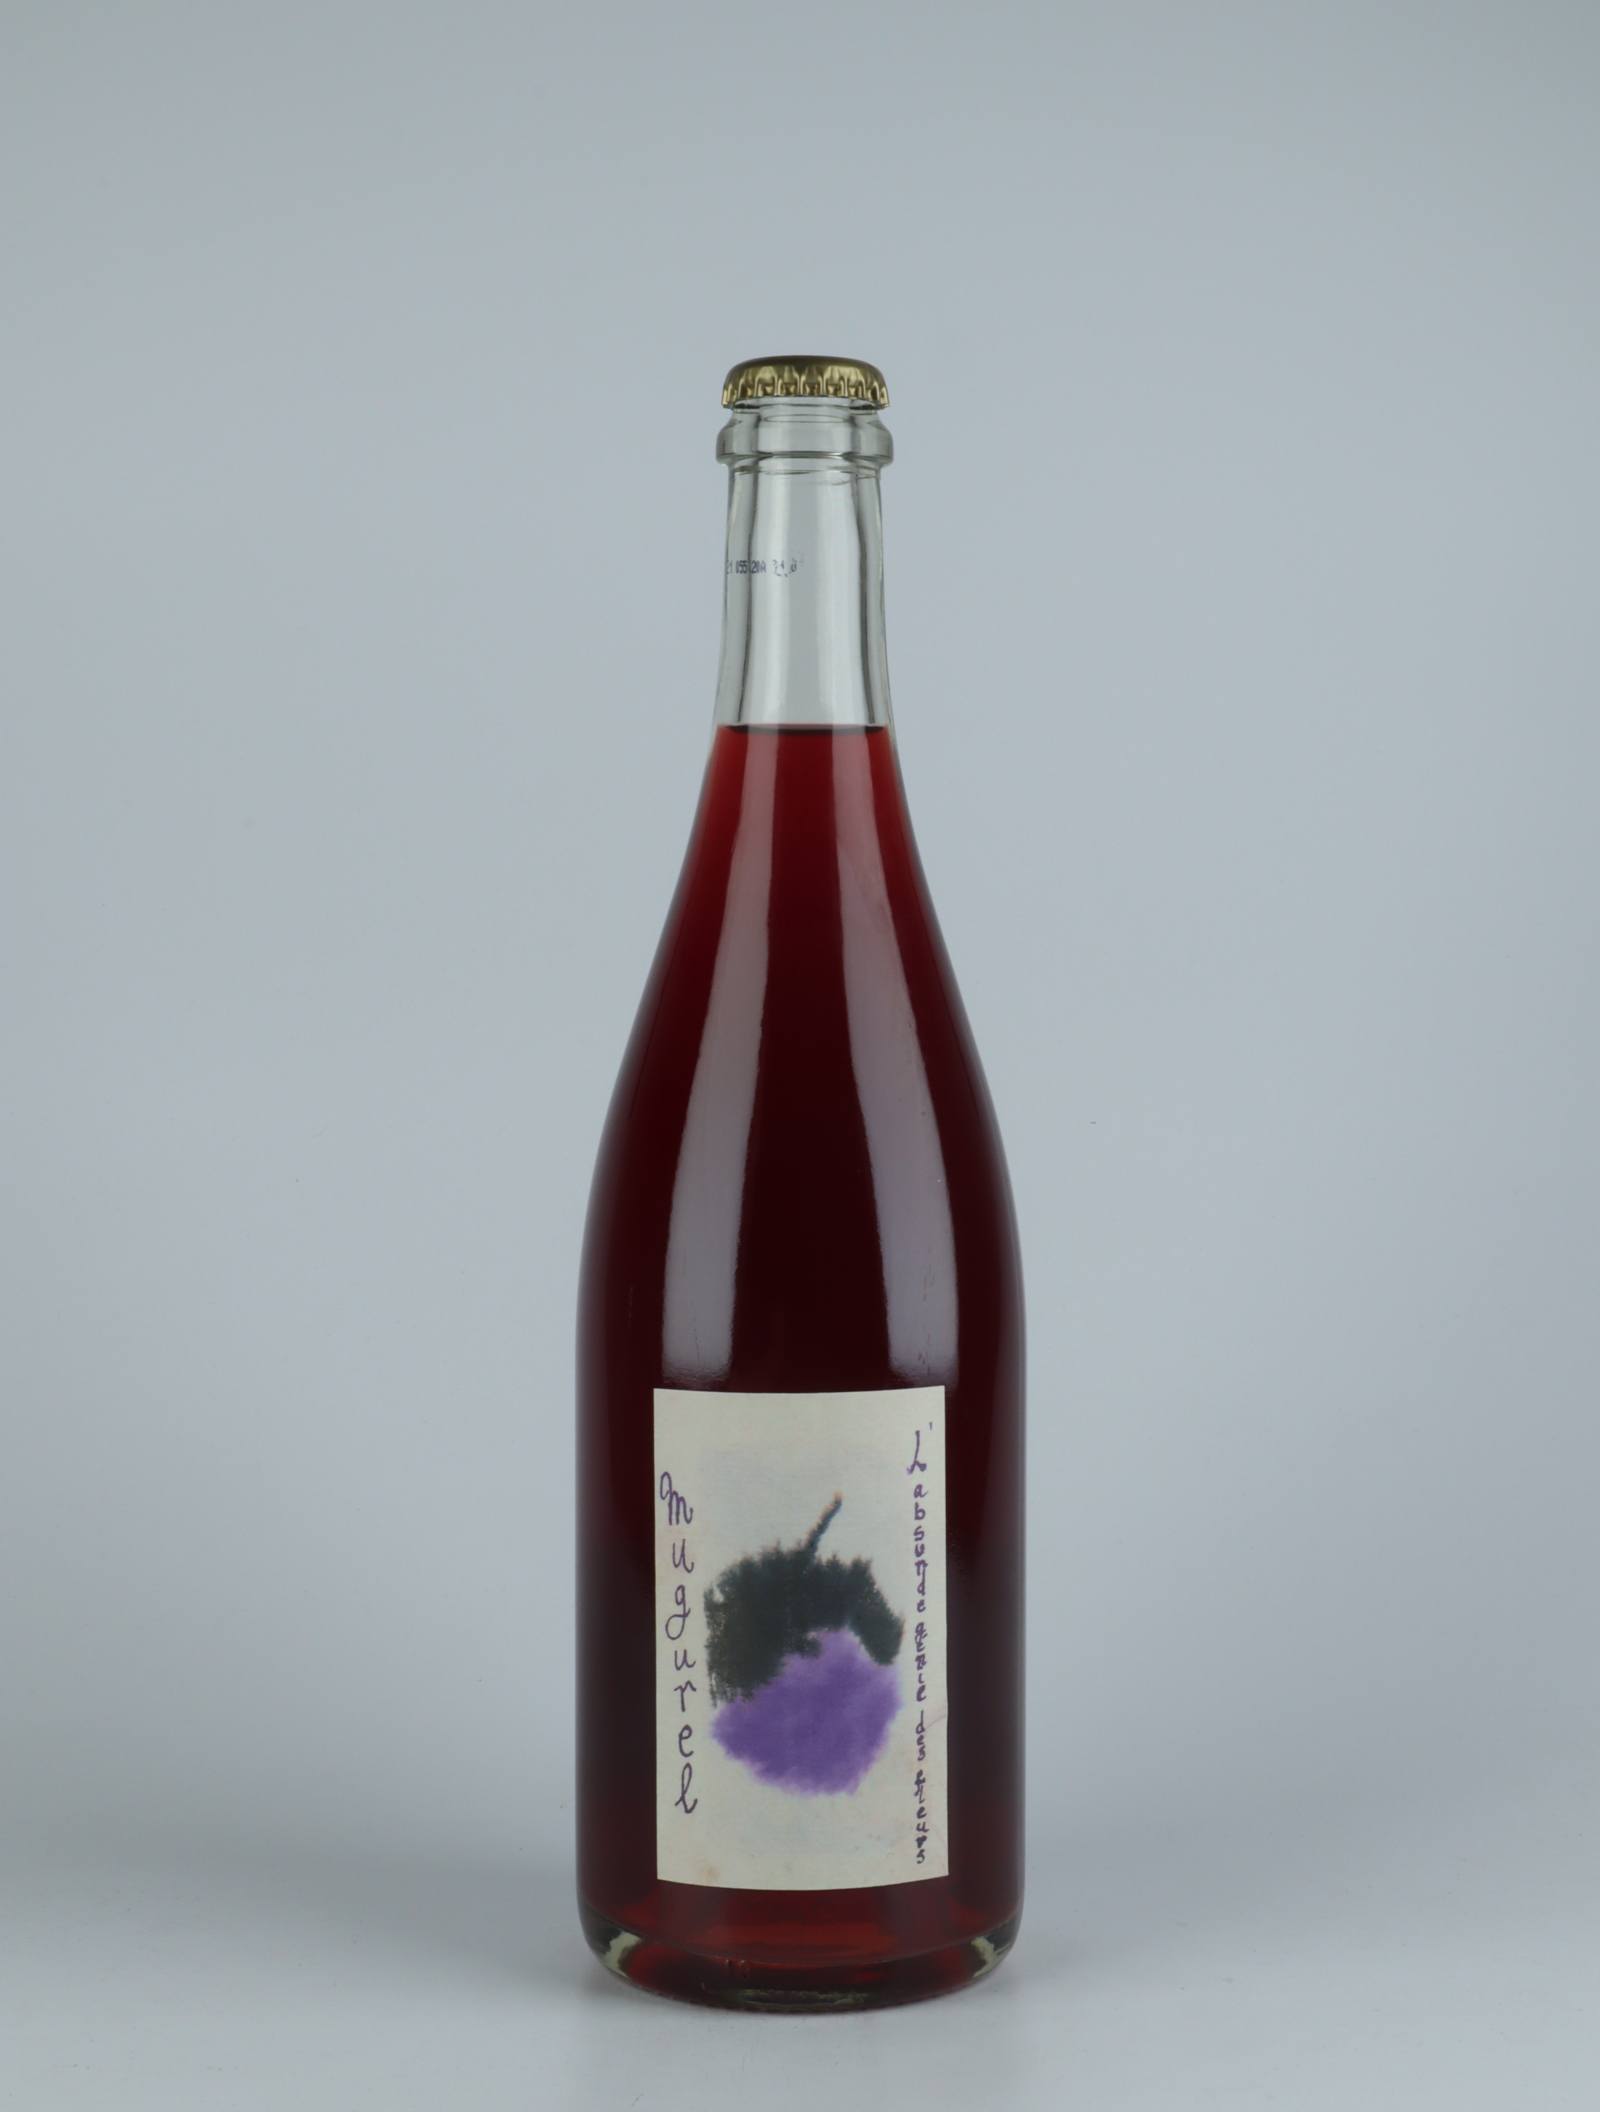 En flaske 2020 Mugurel Rosé fra Absurde Génie des Fleurs, Languedoc i Frankrig